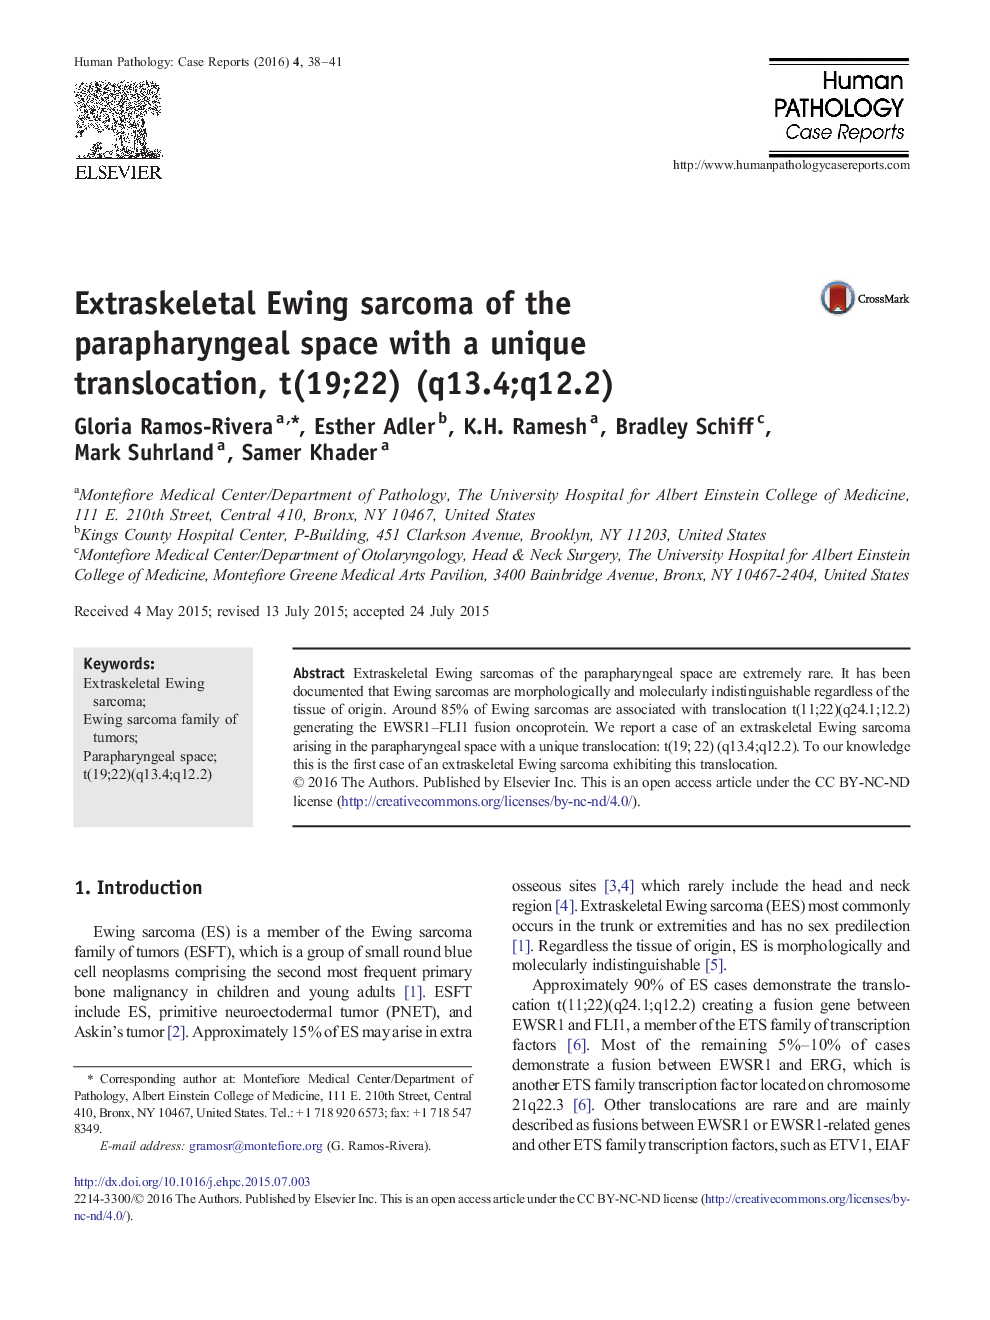 سارکوم اوینگ اسکلتی فوقانی از فضای پارافارنژه با انتقال منحصر به فرد، t(19؛ 22) (q13.4؛ q12.2)